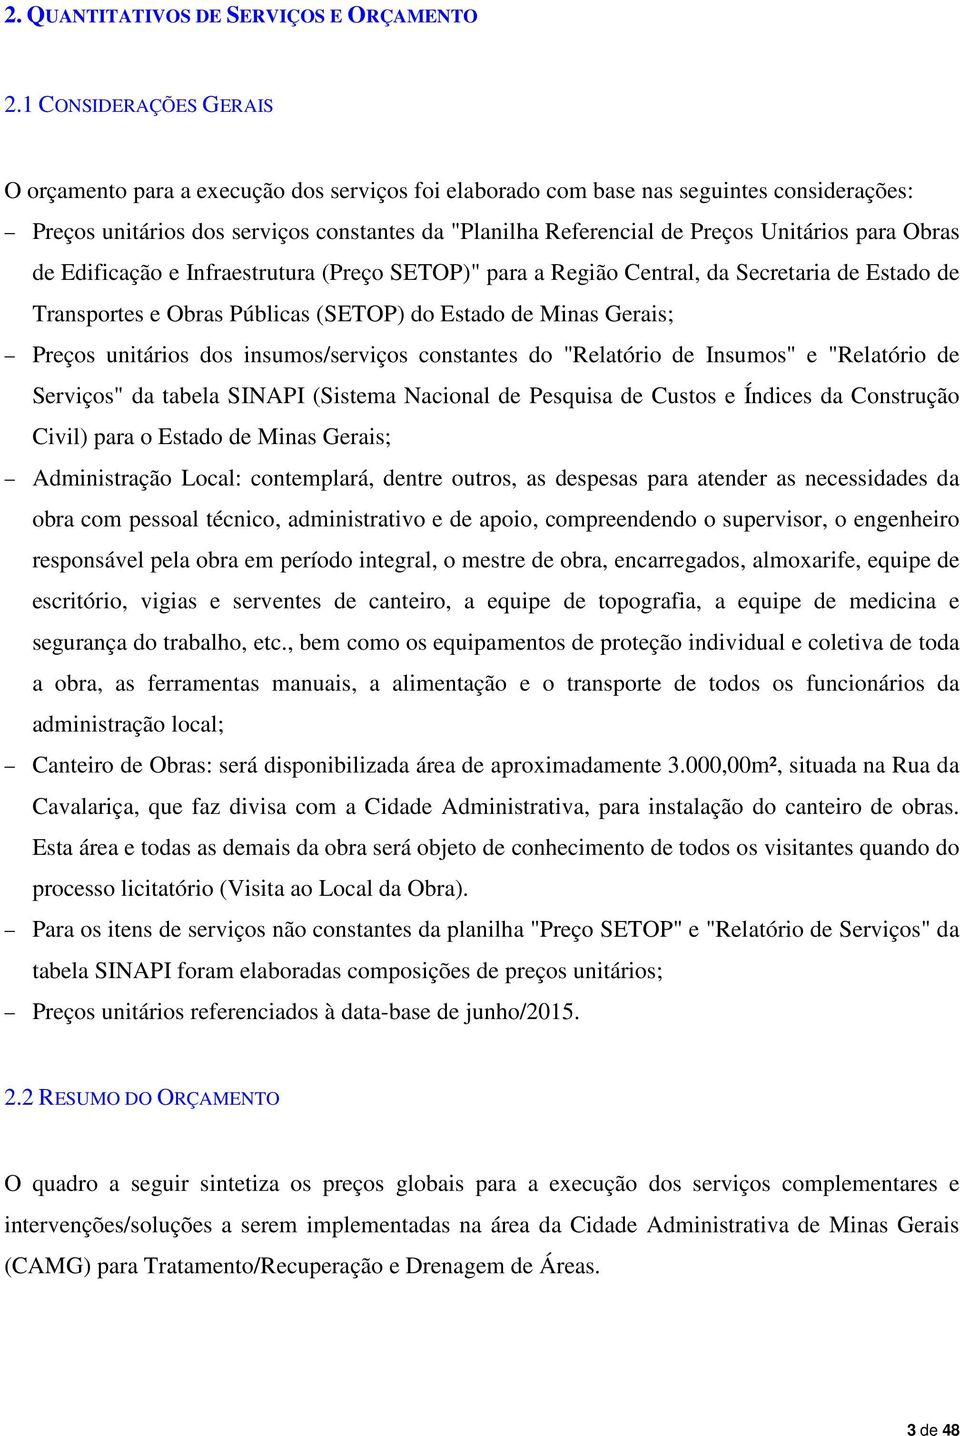 Unitários para Obras de Edificação e Infraestrutura (Preço SETOP)" para a Região Central, da Secretaria de Estado de Transportes e Obras Públicas (SETOP) do Estado de Minas Gerais; Preços unitários